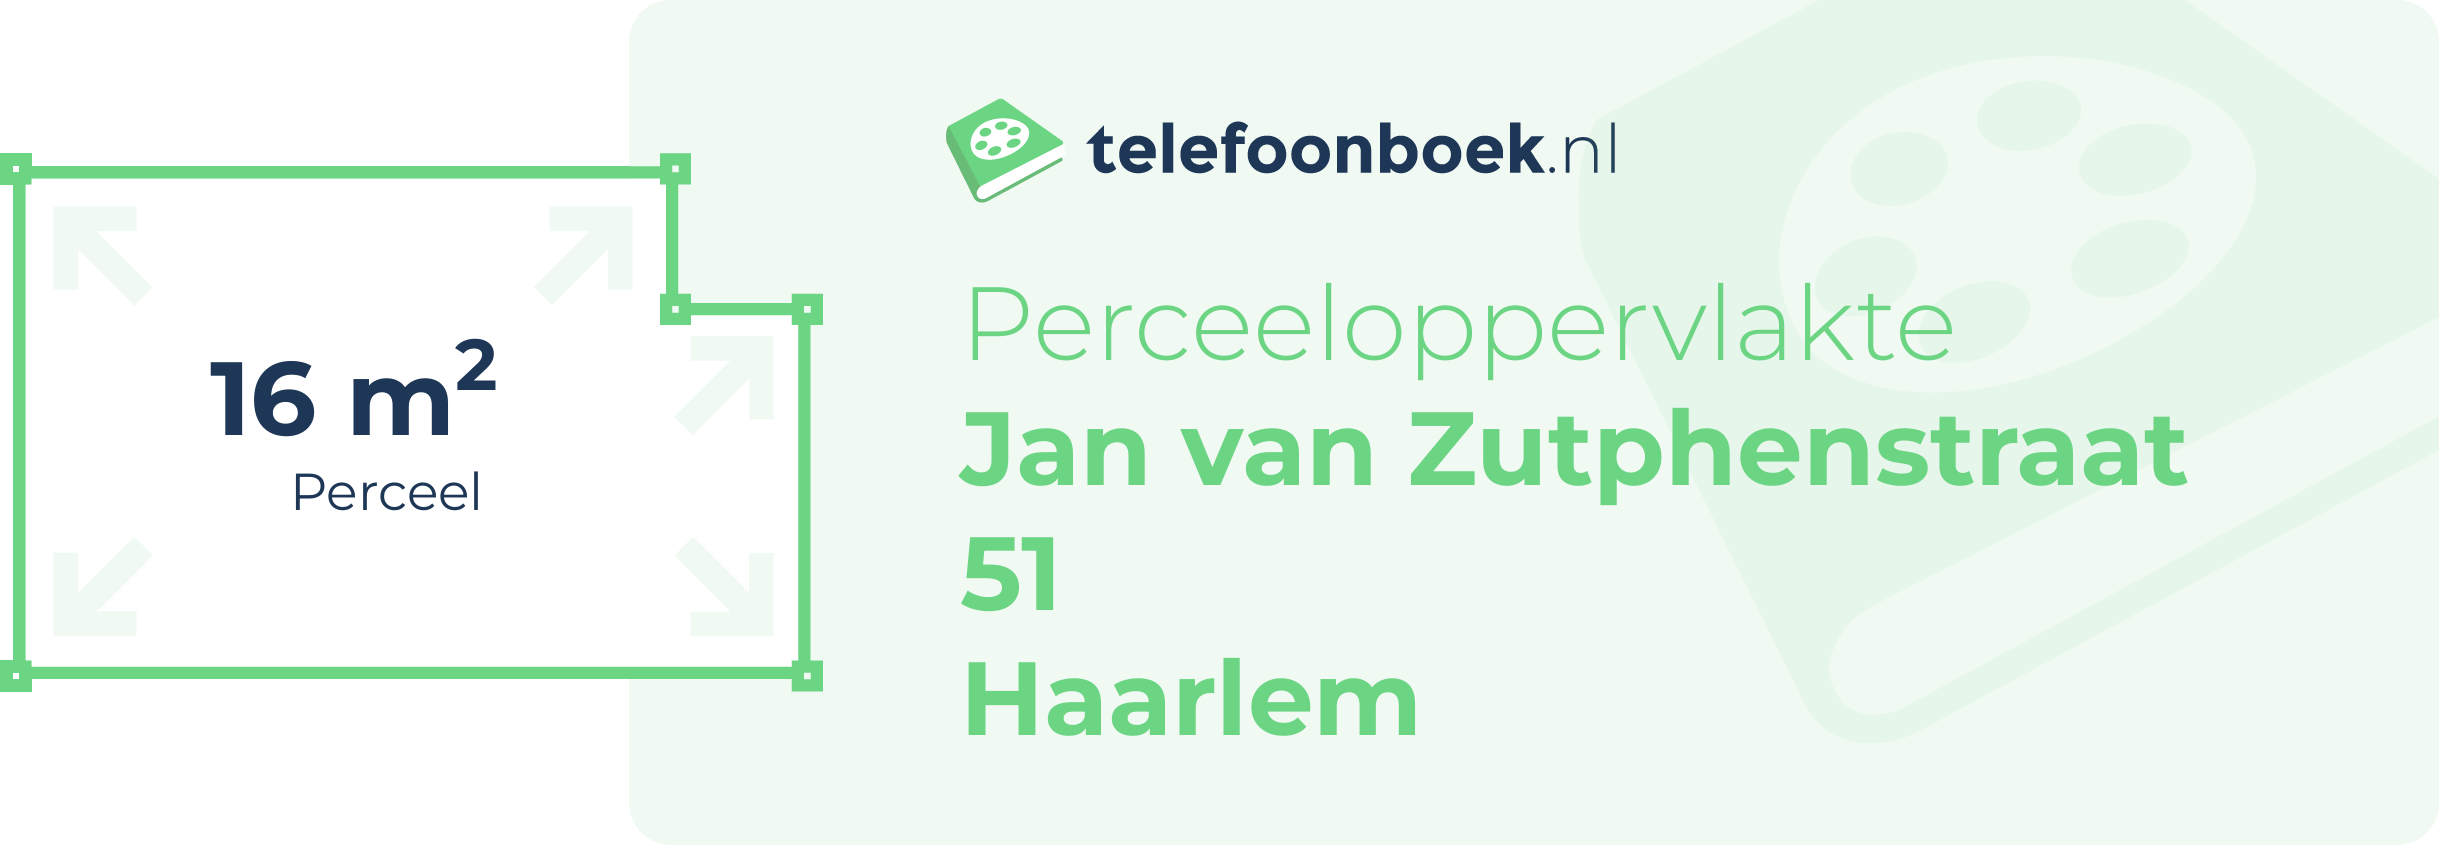 Perceeloppervlakte Jan Van Zutphenstraat 51 Haarlem